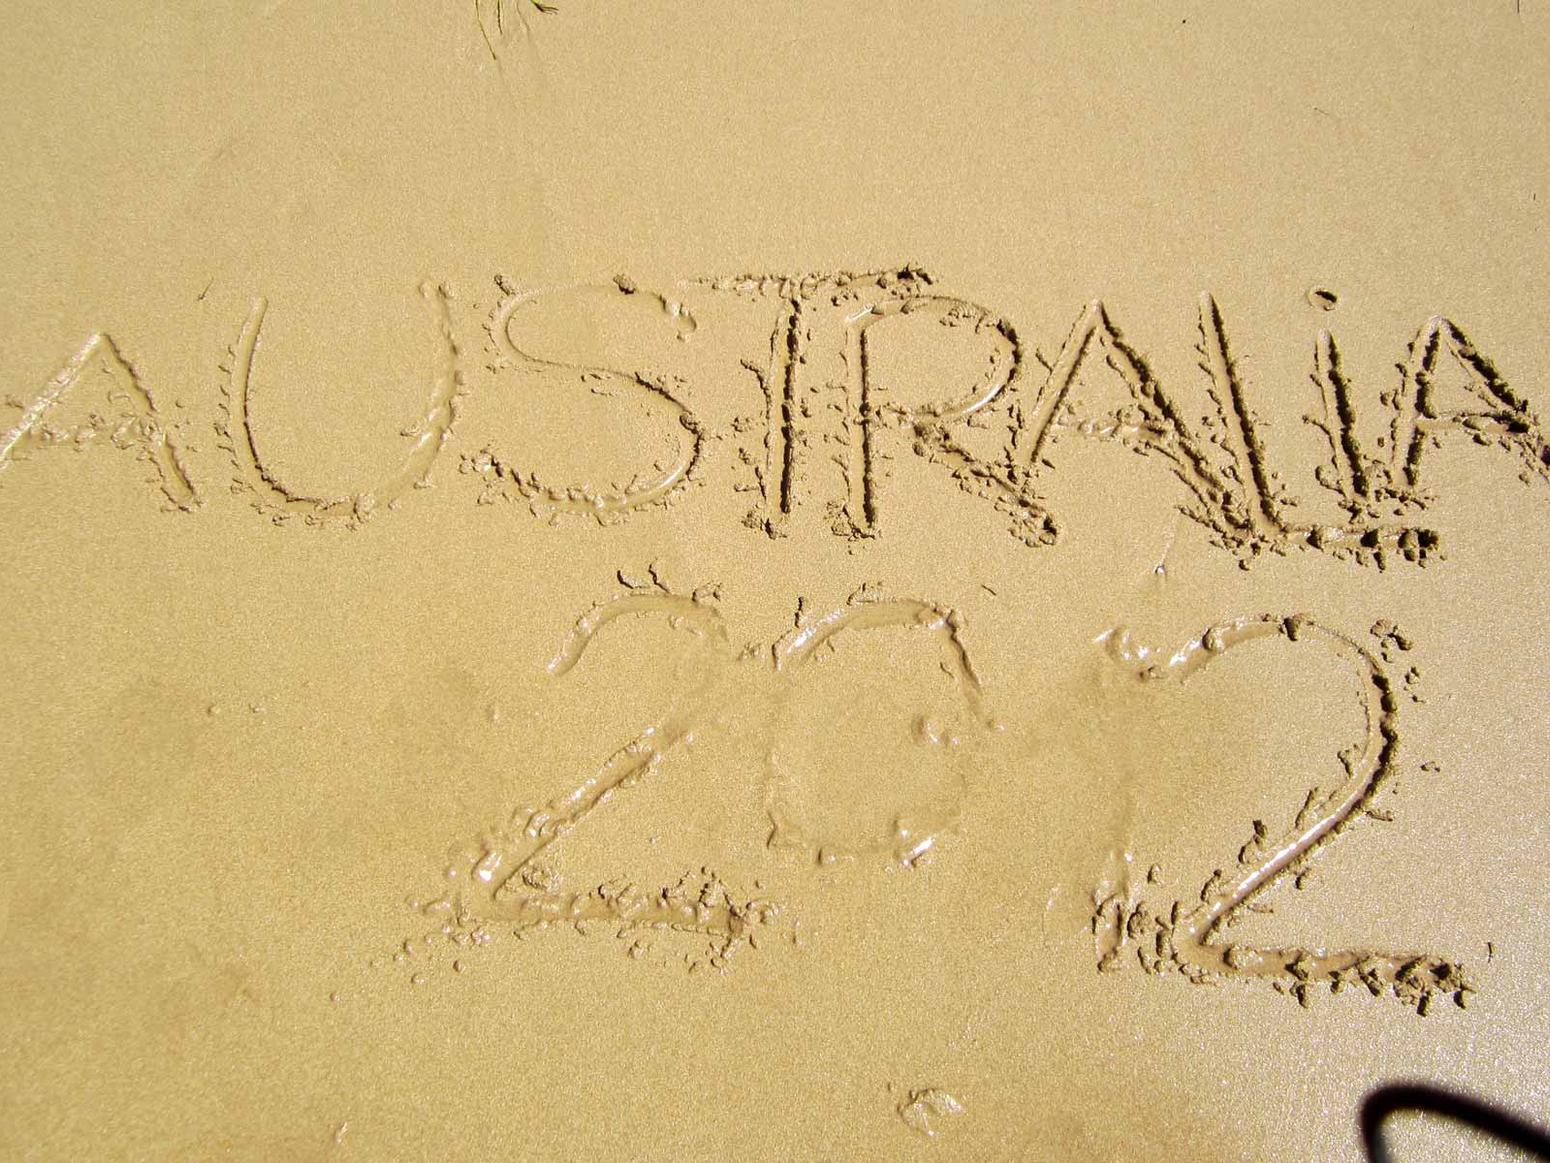 Australia 2012 in den nassen Sand geschrieben